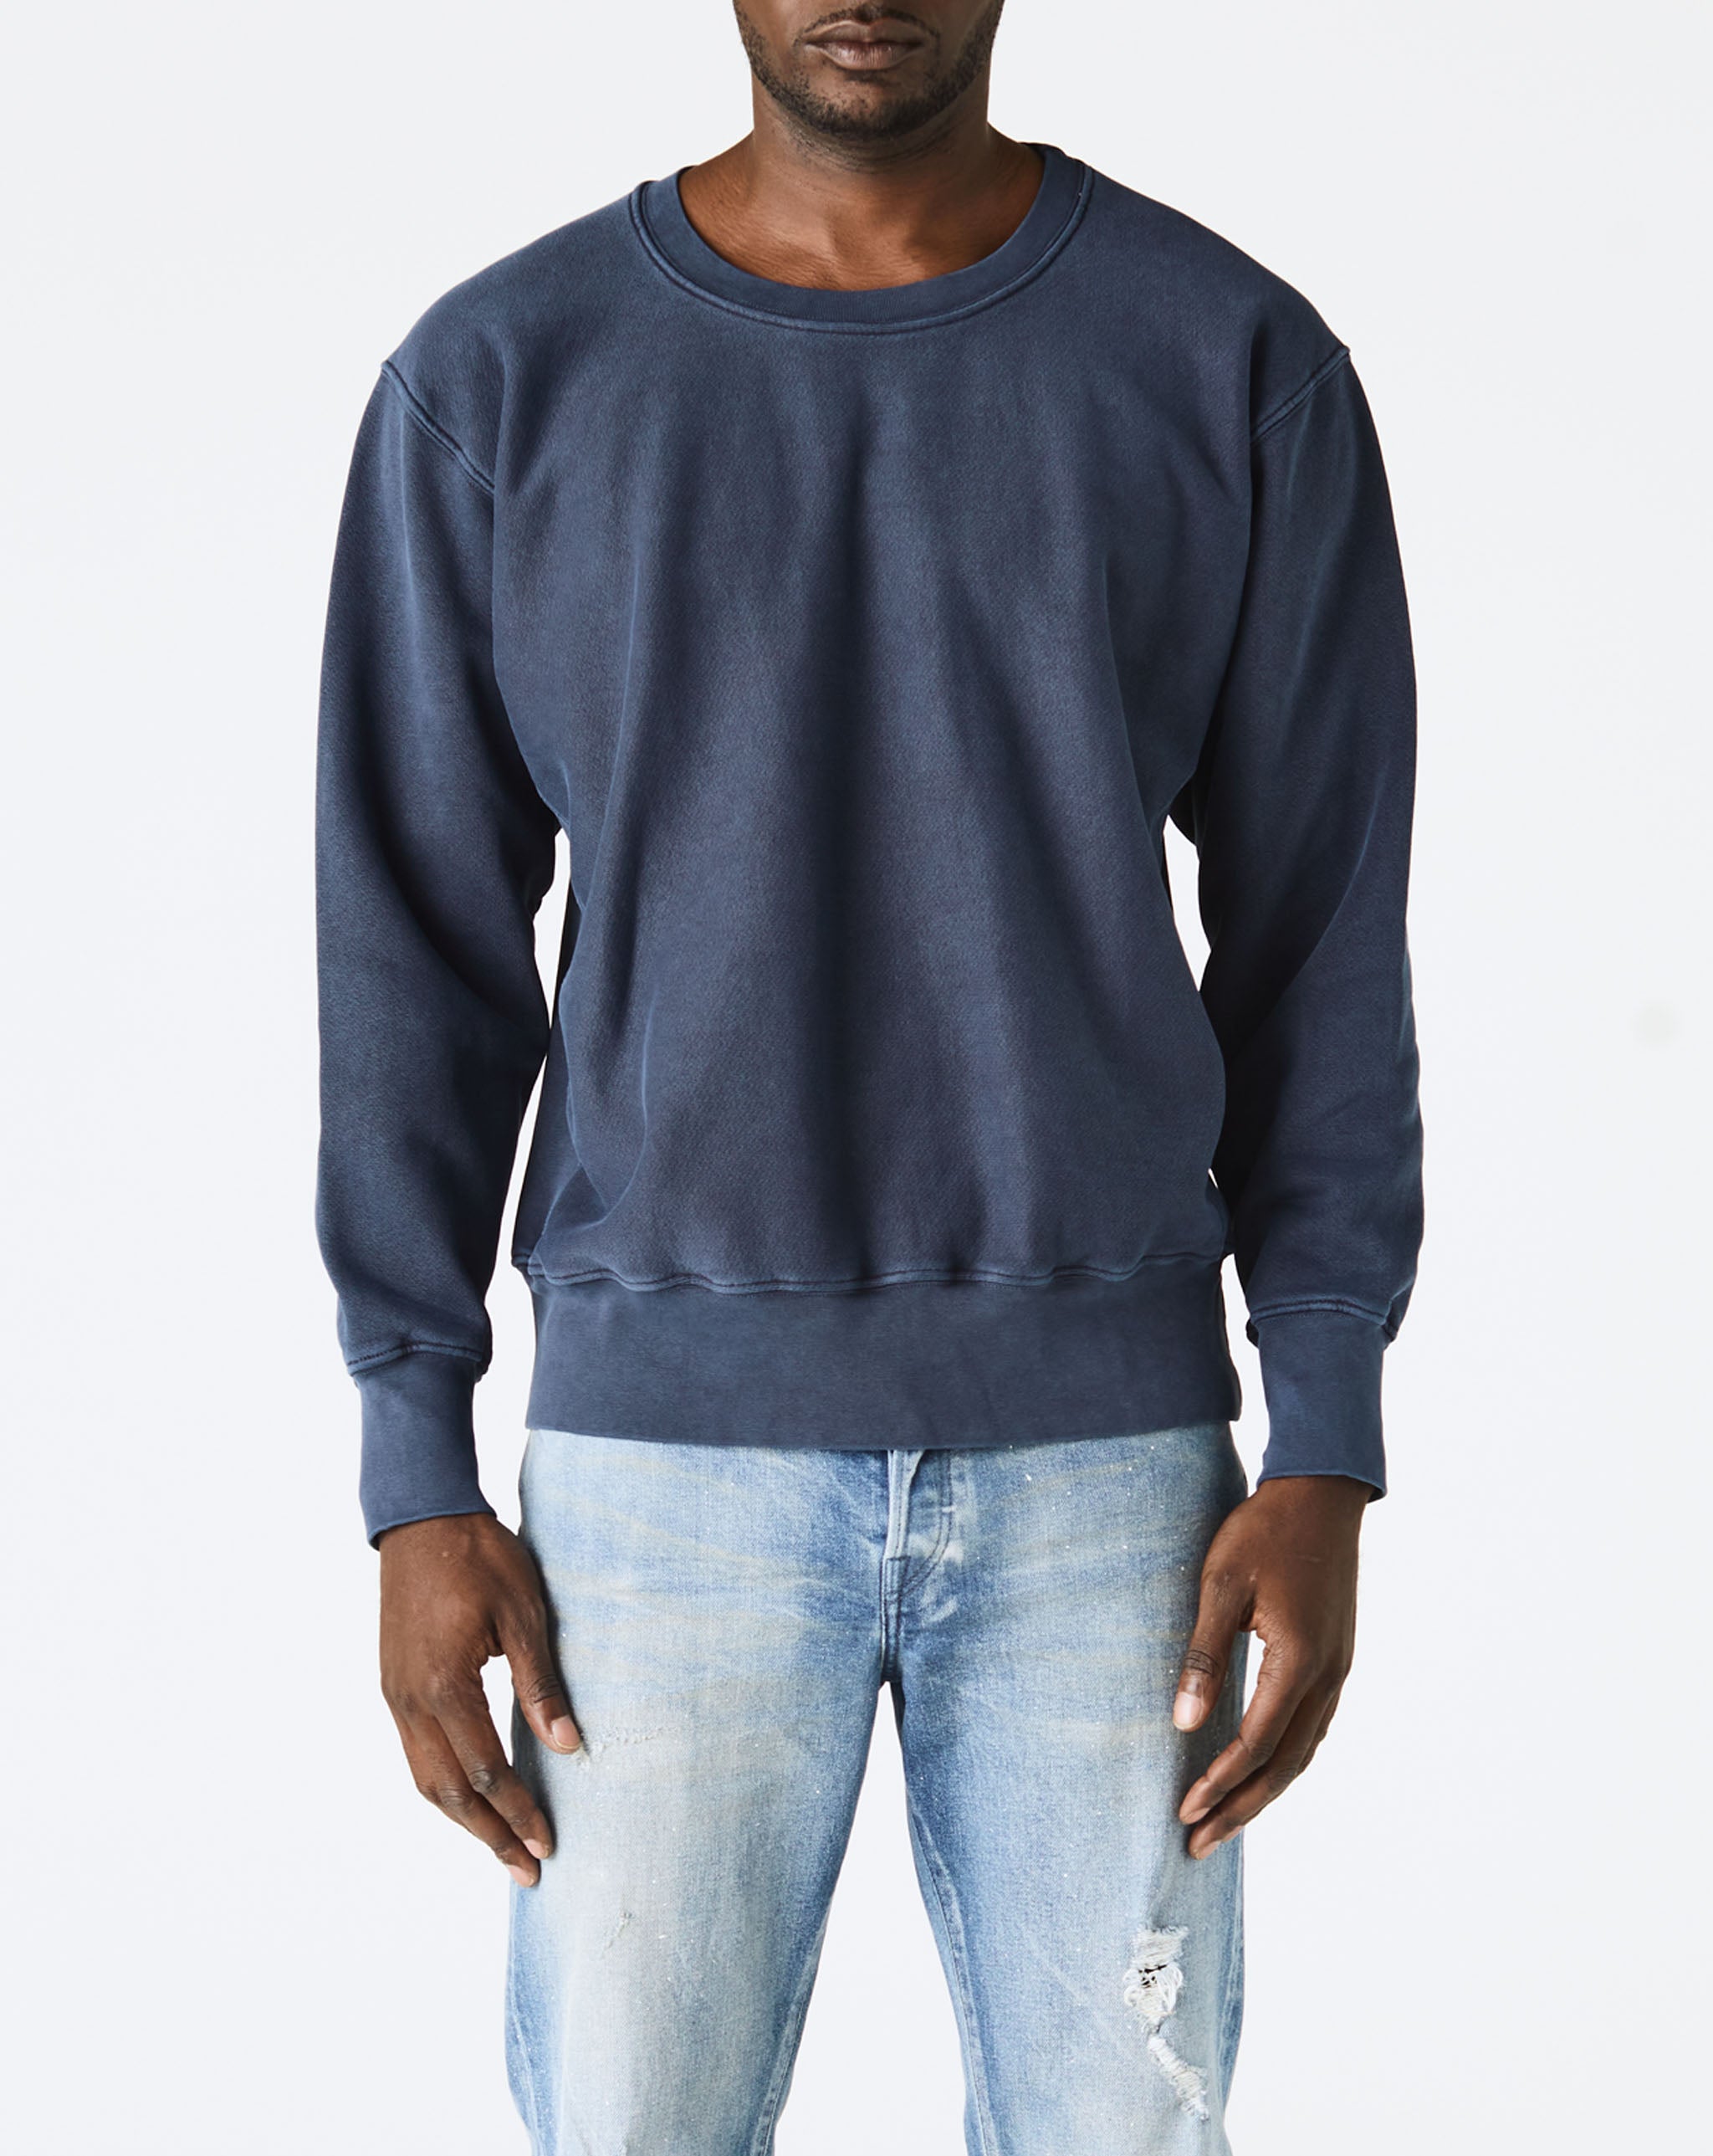 Les Tien Crewneck Sweatshirt  - Cheap Urlfreeze Jordan outlet